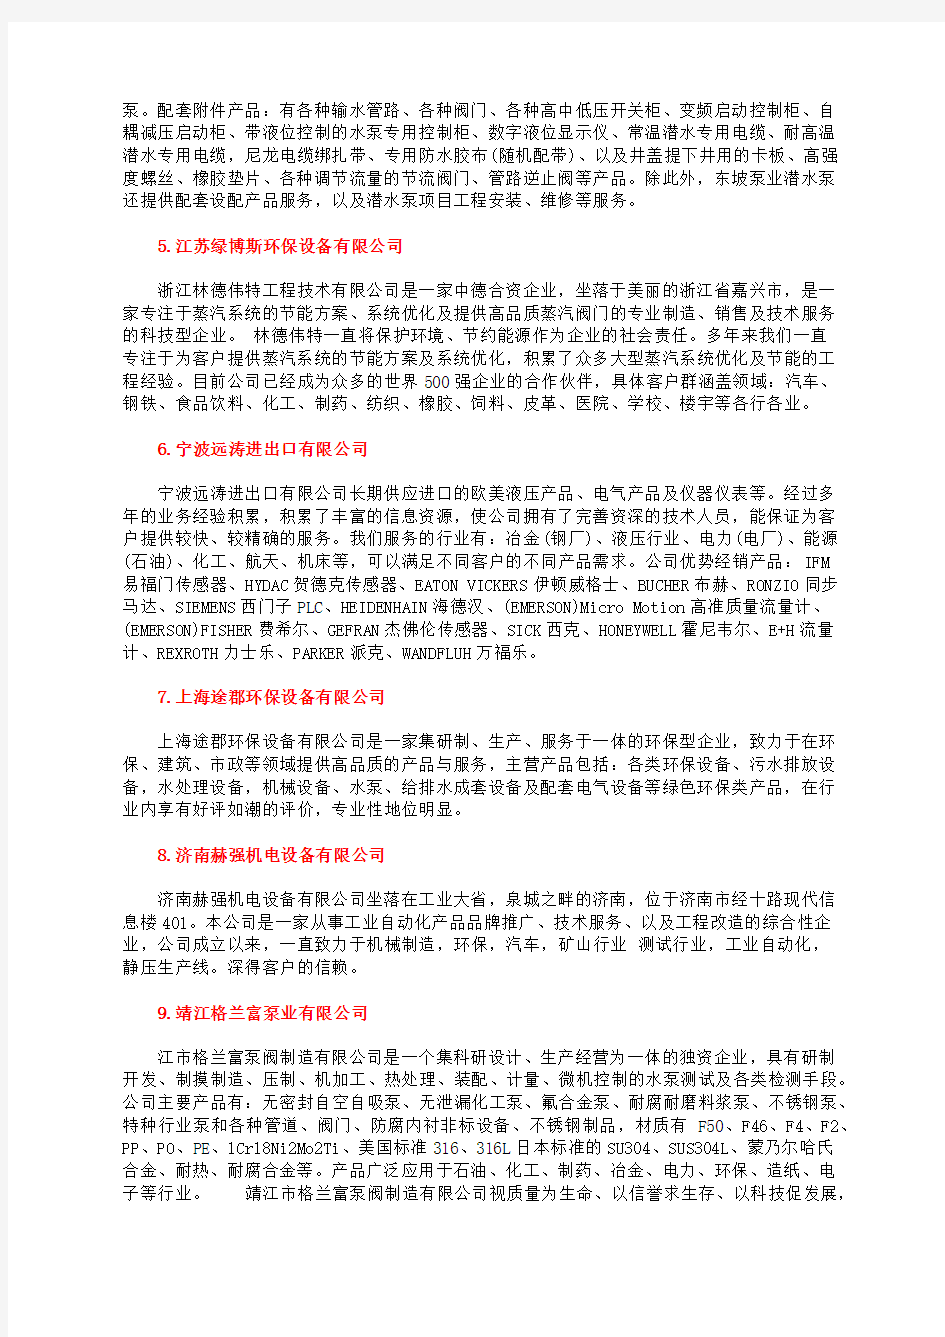 中国强耐腐蚀化工泵价格十大耐腐蚀泵品牌最新公司排名